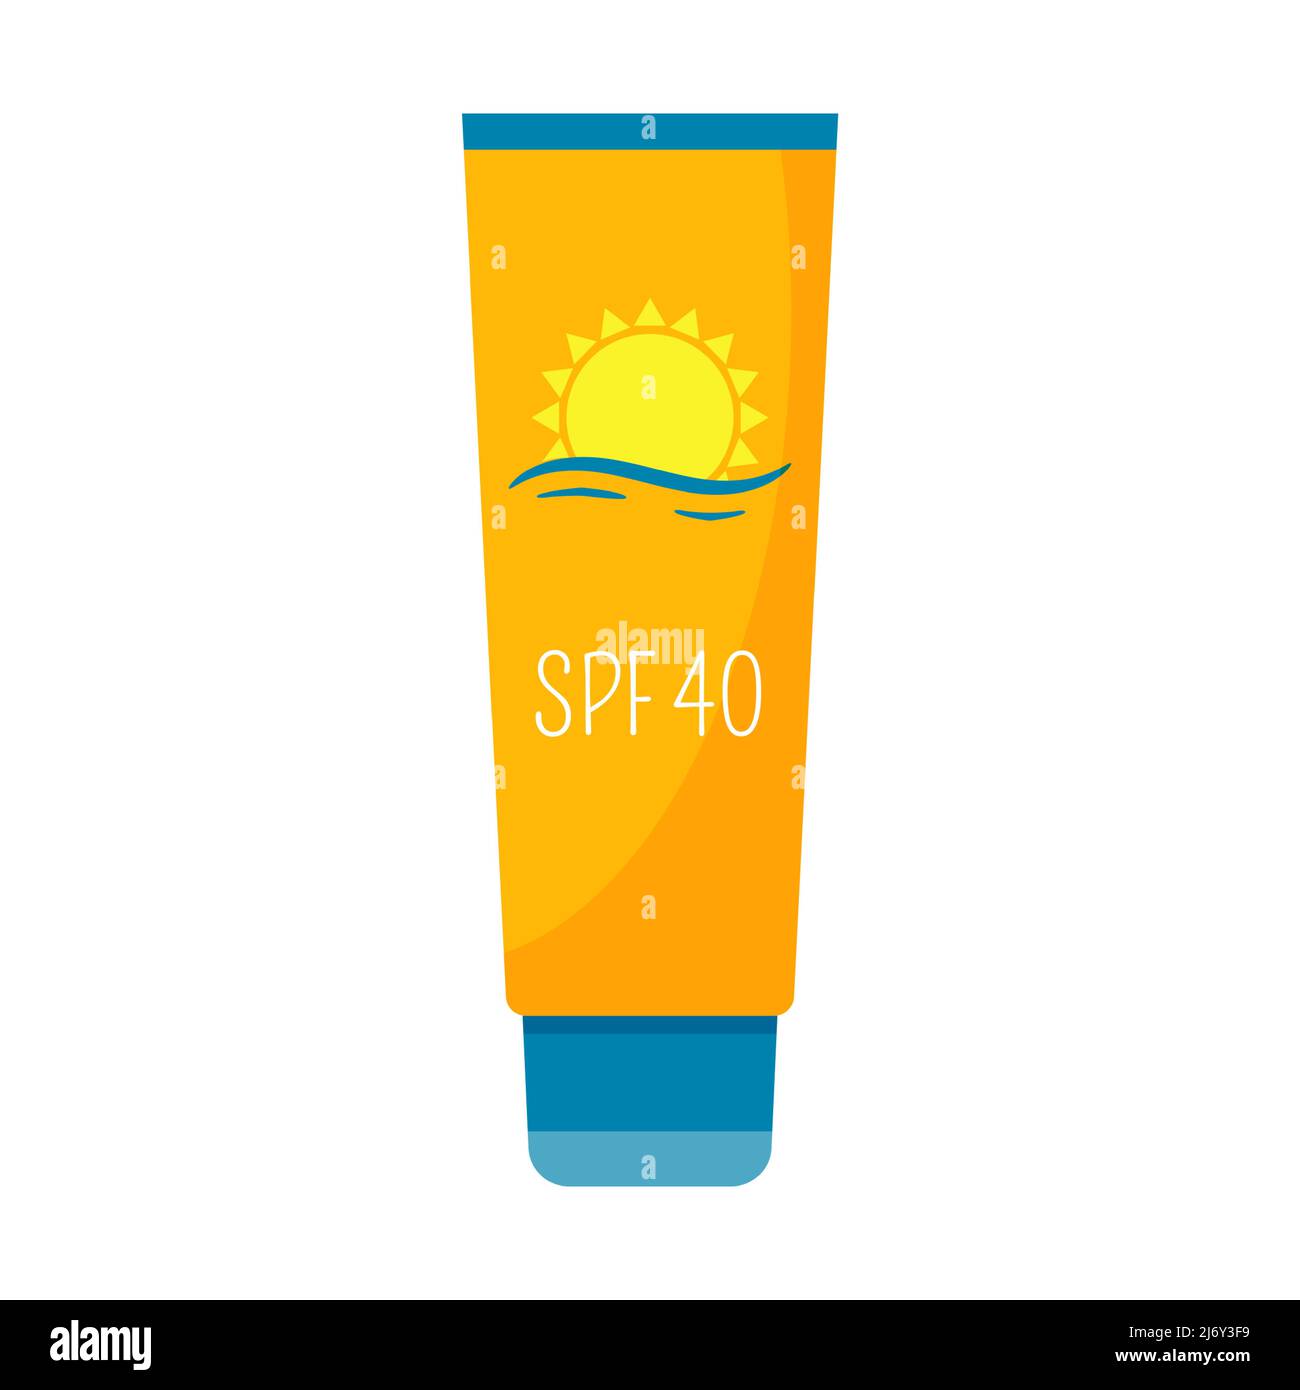 Sonnenschutzmittel. Kosmetik zum Schutz vor Sonnenbrand. In einem Röhrchen mit Deckel cremen. Dekoratives Element für Sommerurlaub am Strand, Urlaub. Flache Farbgebung Stock Vektor